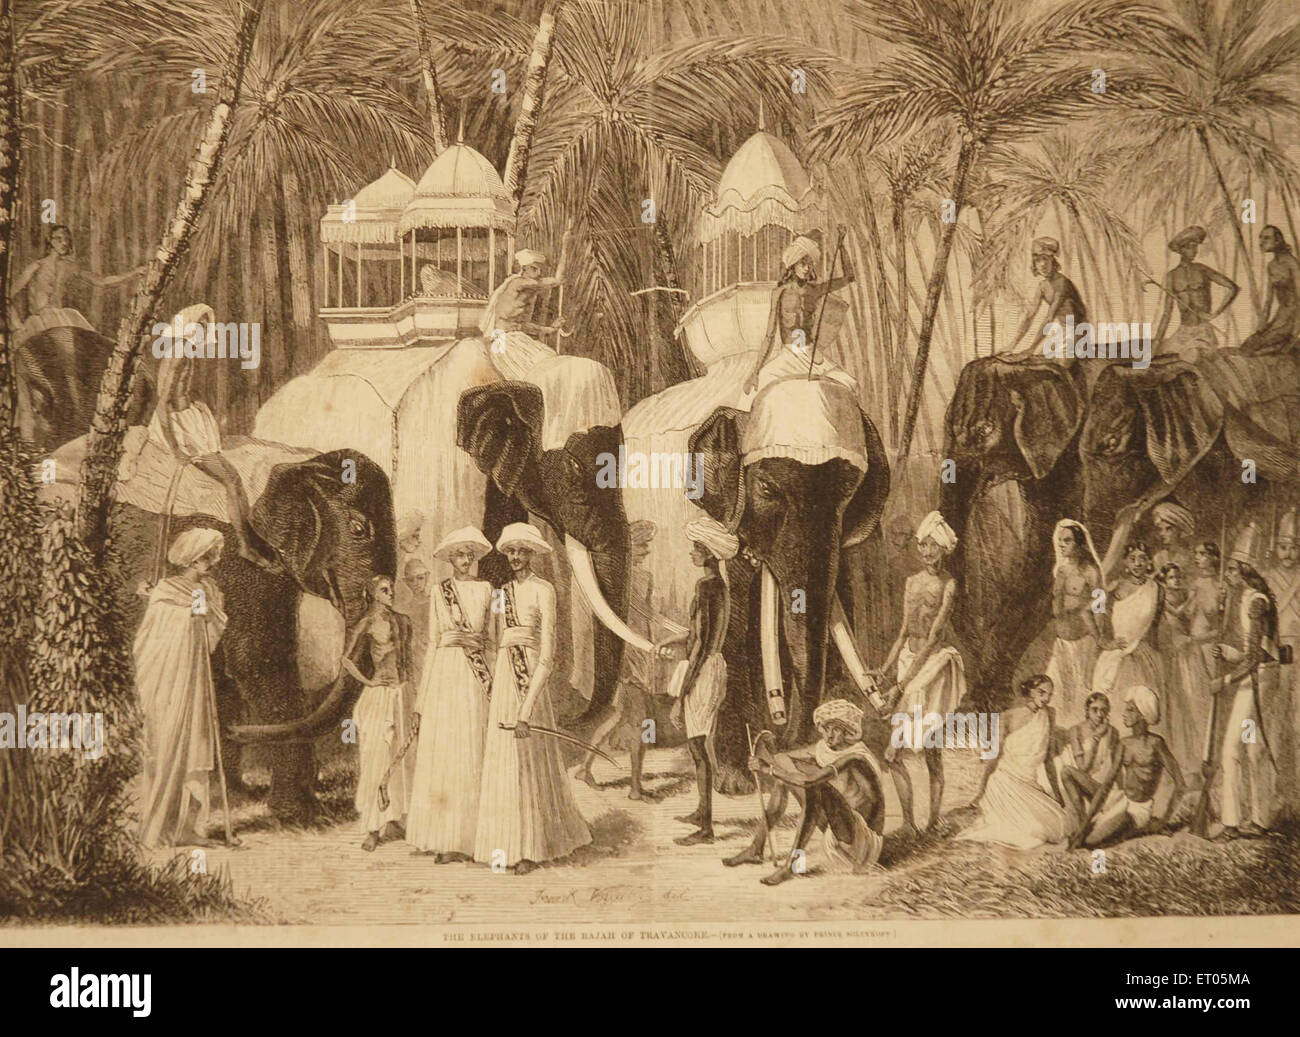 Elefanten von Rajah, König von Travancore, Königreich Travancore, Königreich Thiruvithamkoor, Indien, alte 1800er-Gravur Stockfoto